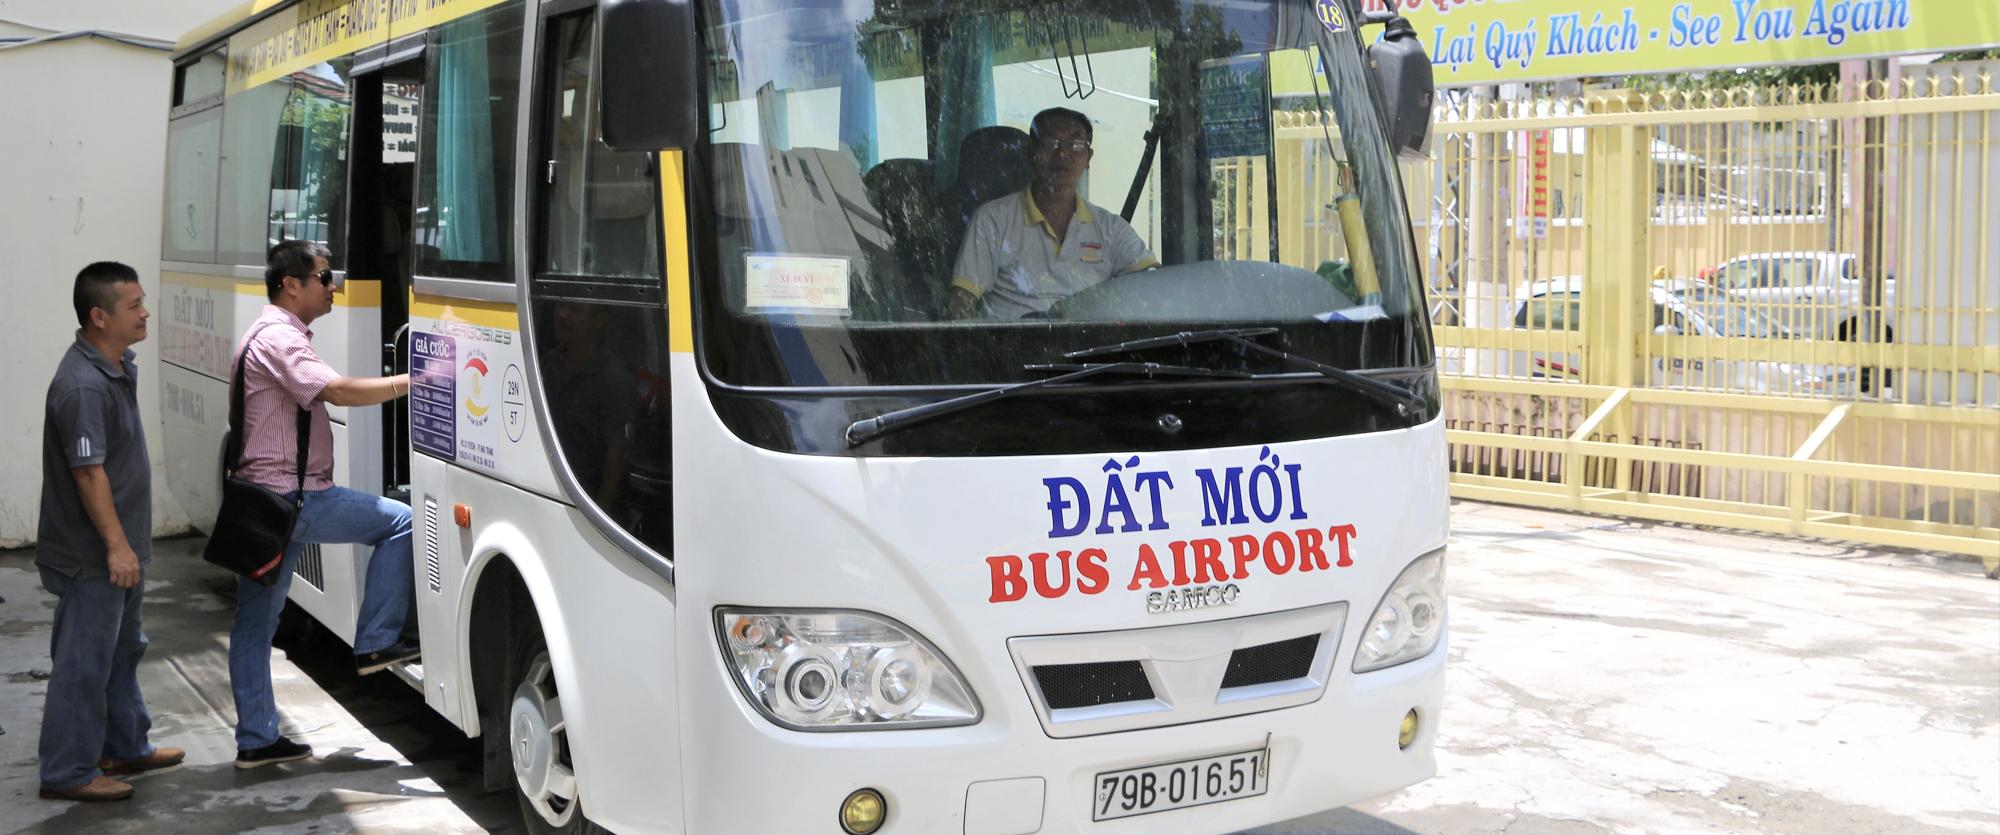 Фото автобуса аэропорта